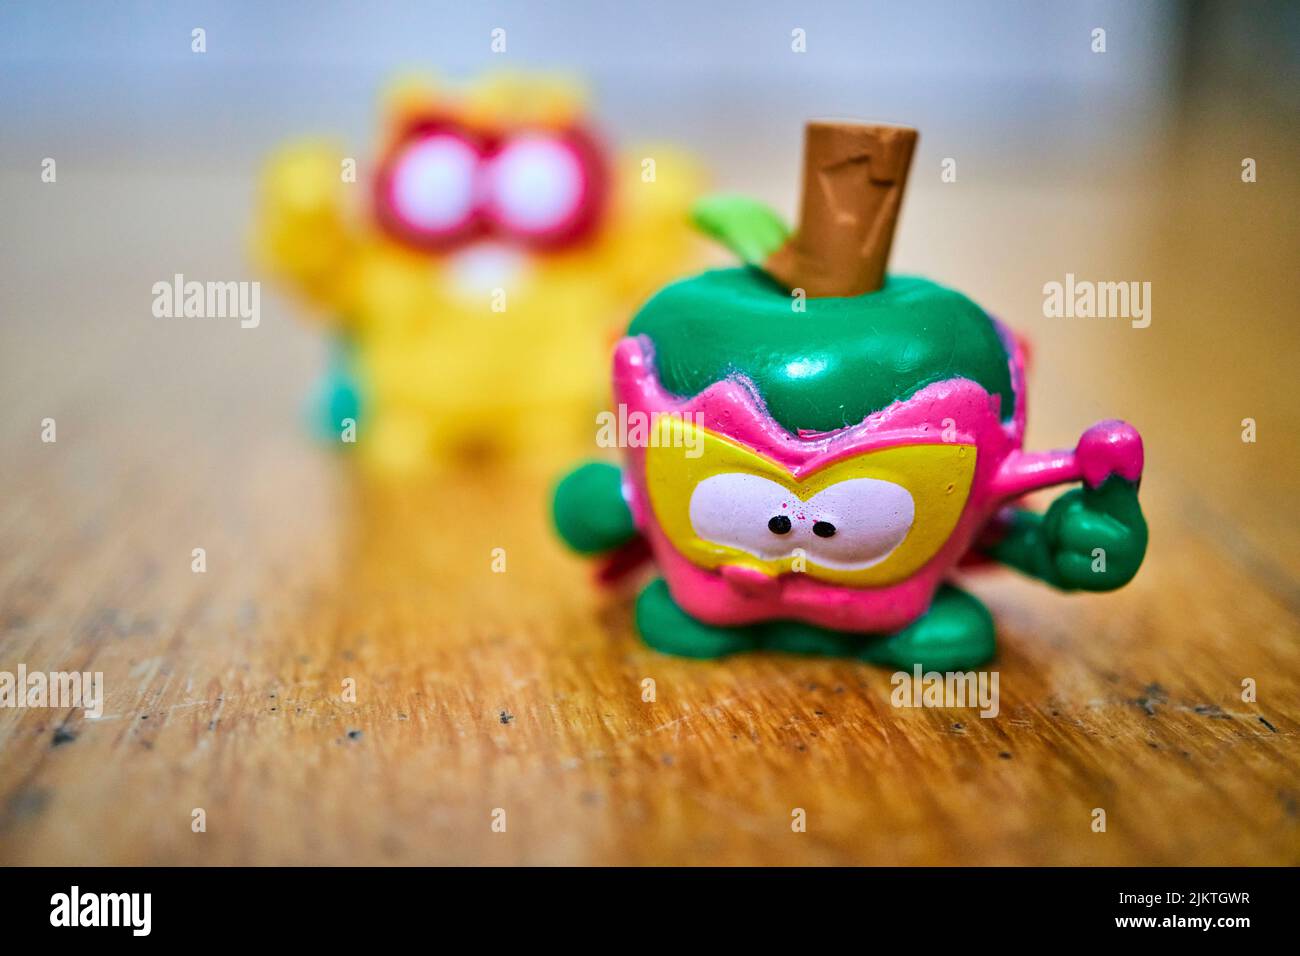 La scatola magica Superthings Kazoom Kids personaggio giocattolo verde a forma di mela della squadra di eroi Foto Stock